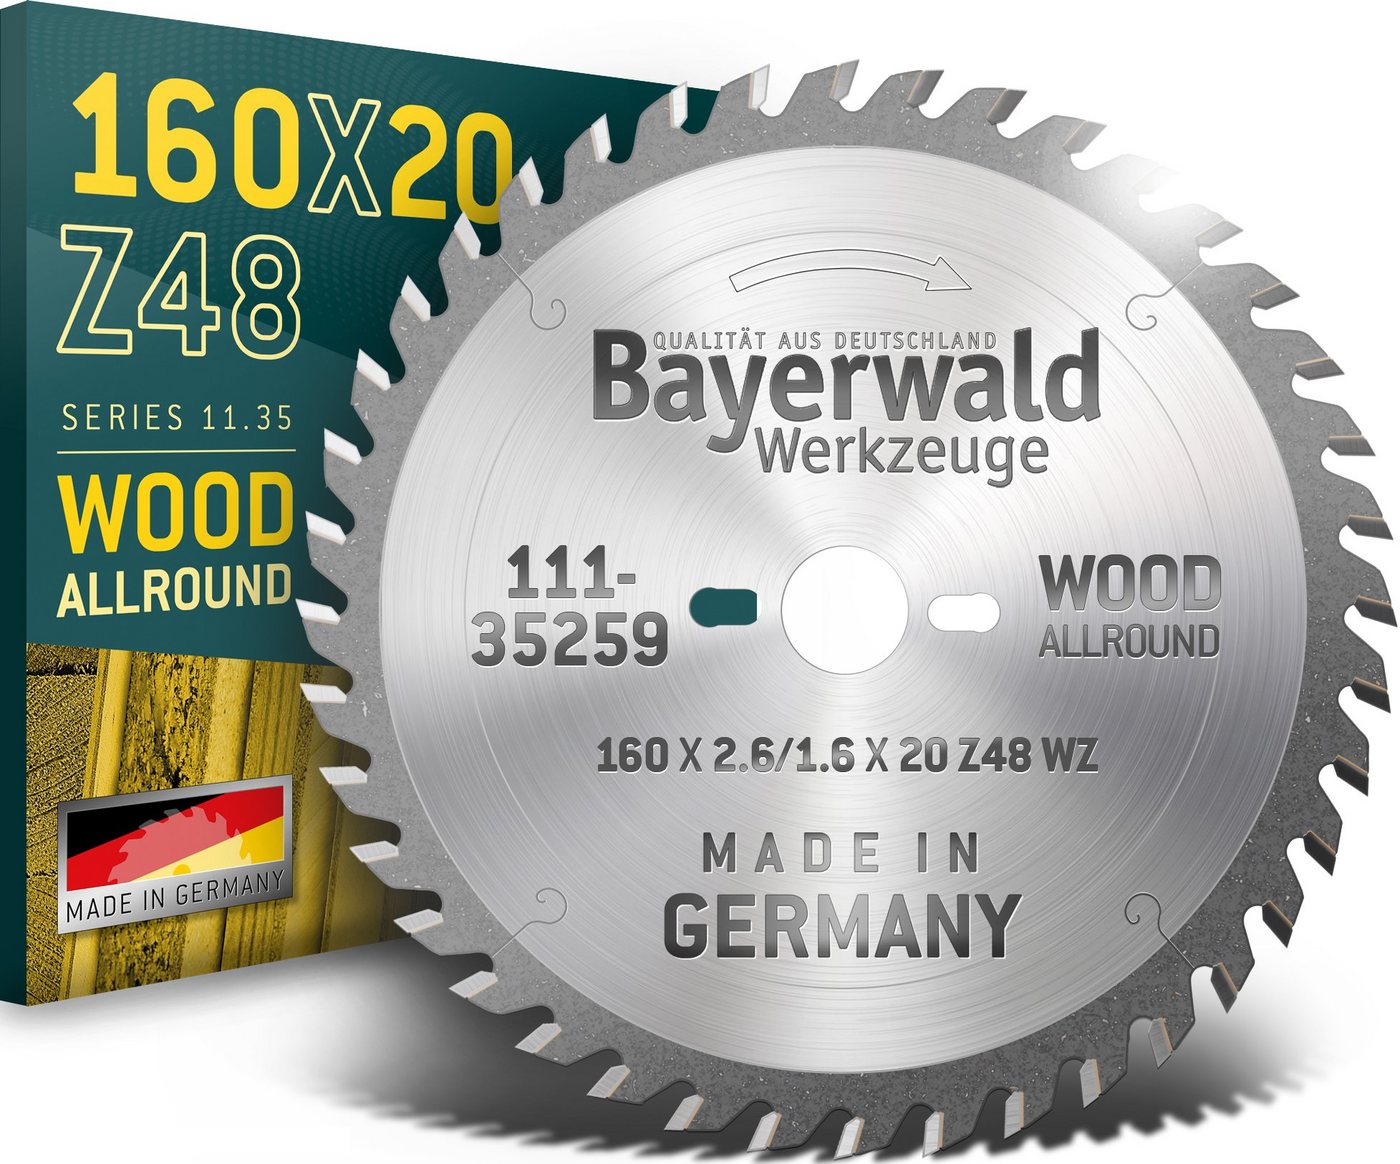 QUALITÄT AUS DEUTSCHLAND Bayerwald Werkzeuge Kreissägeblatt HM Kreissägeblatt - 160 x 2.6/1.6 x 20 Z48 WZ, 20/16 mm (Bohrung) WZ (Zahnform) positiv (Zahnstellung) von QUALITÄT AUS DEUTSCHLAND Bayerwald Werkzeuge